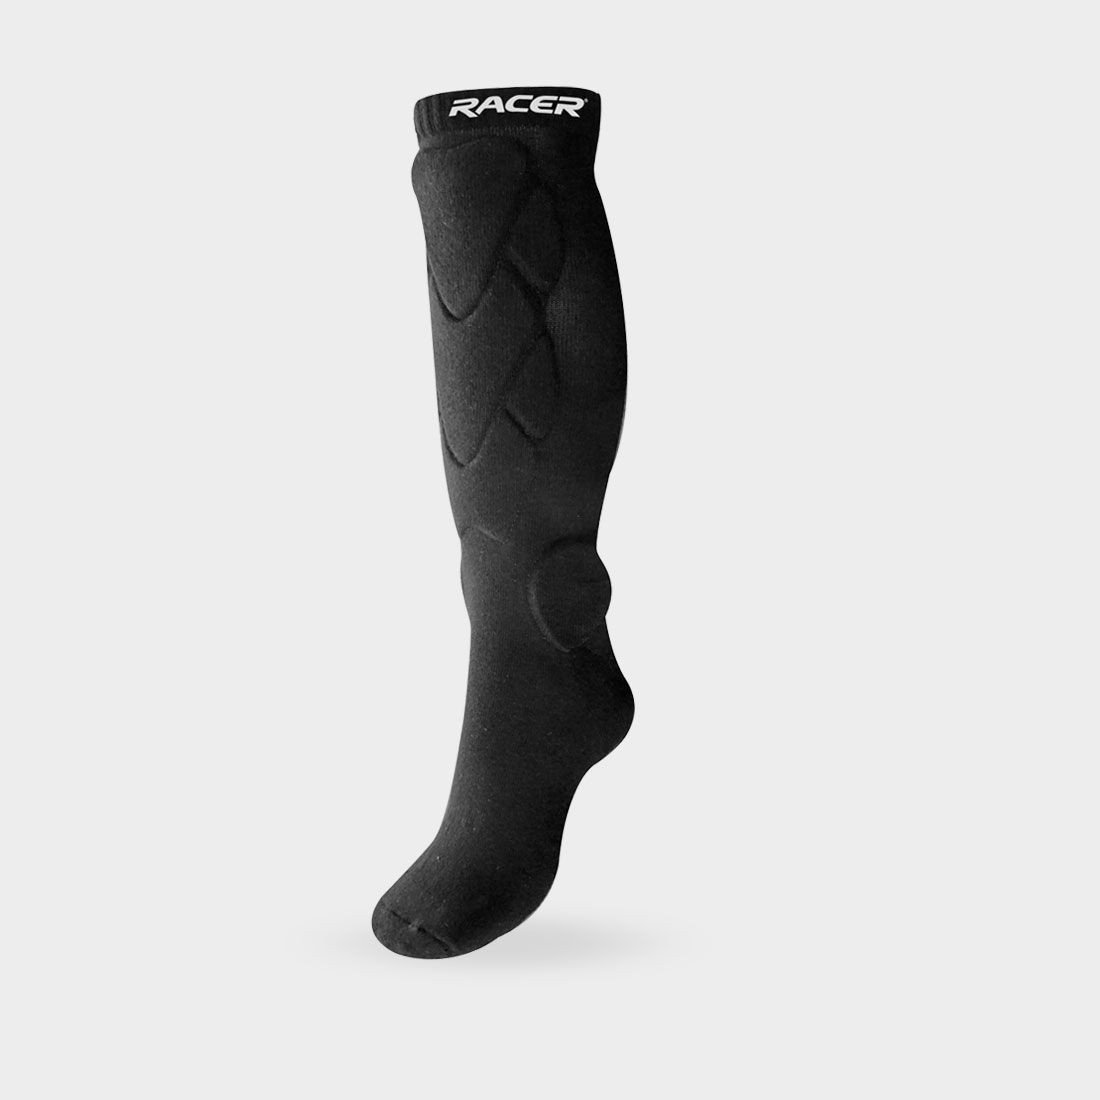 RACER ANTI-SHOX, ponožky s chrániči (černá, vel. 35-38)